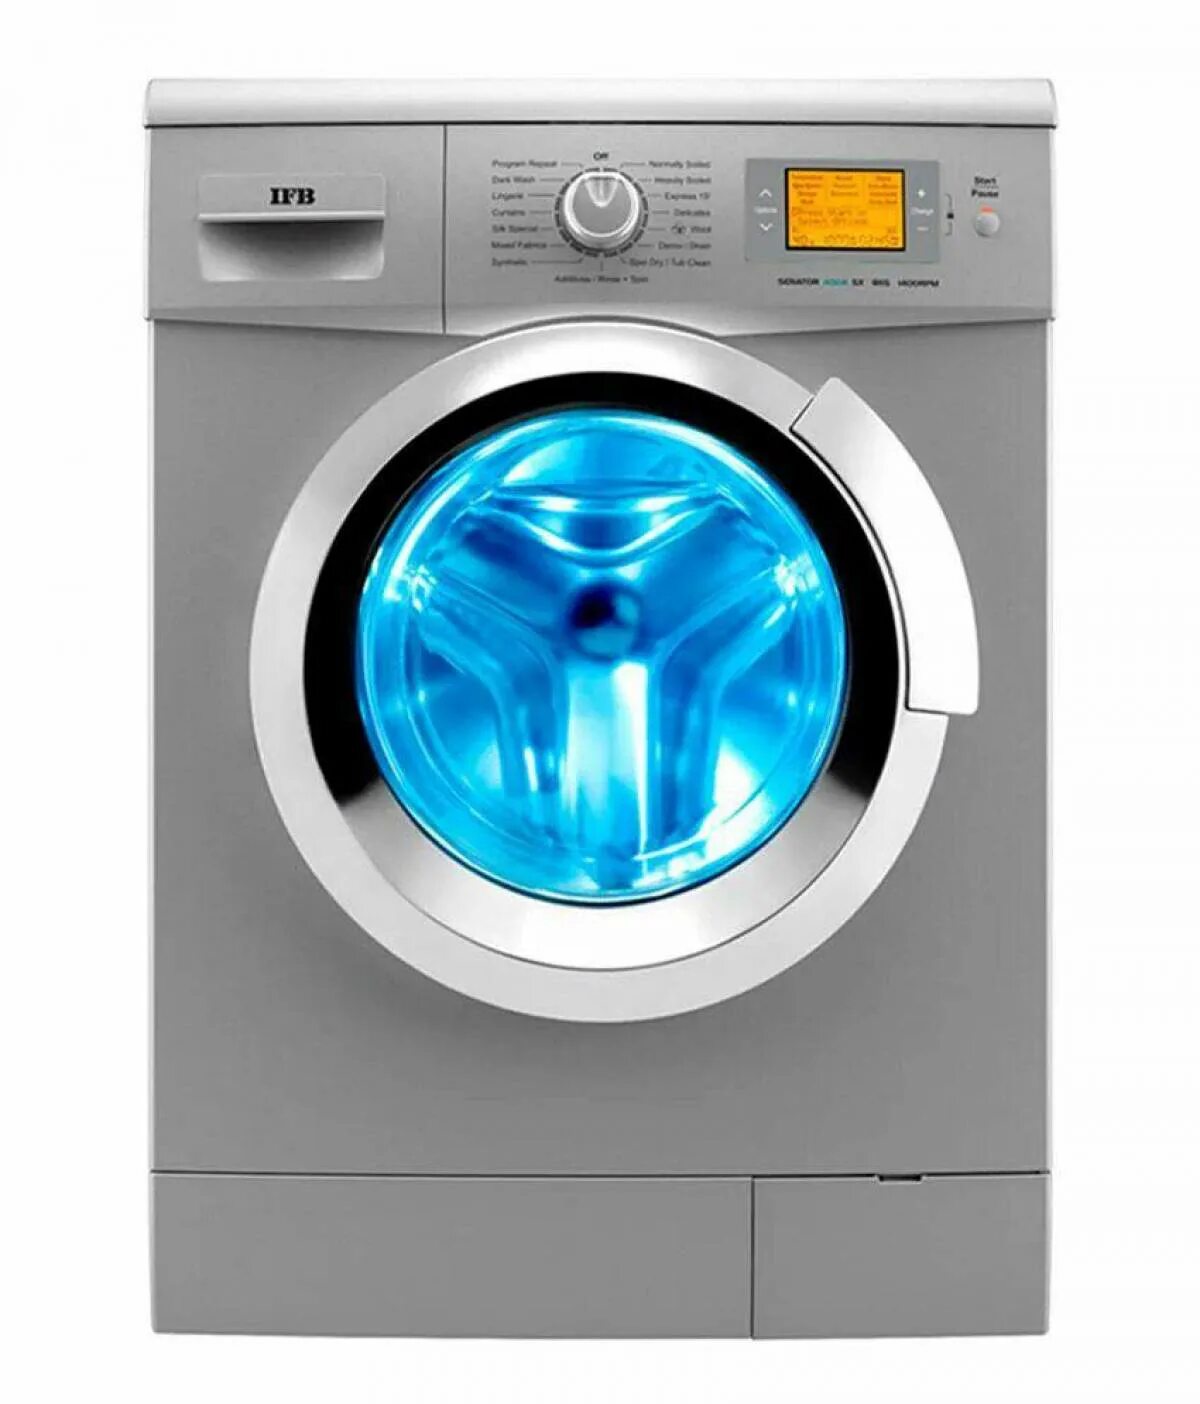 Говорящие стиральные машины. Стиральная машина Automatic washing Machine. Самсунг Wash Master стиральная машина. Стиральная машина Haier hw50-1010. Samsung стиральная машина 2022.